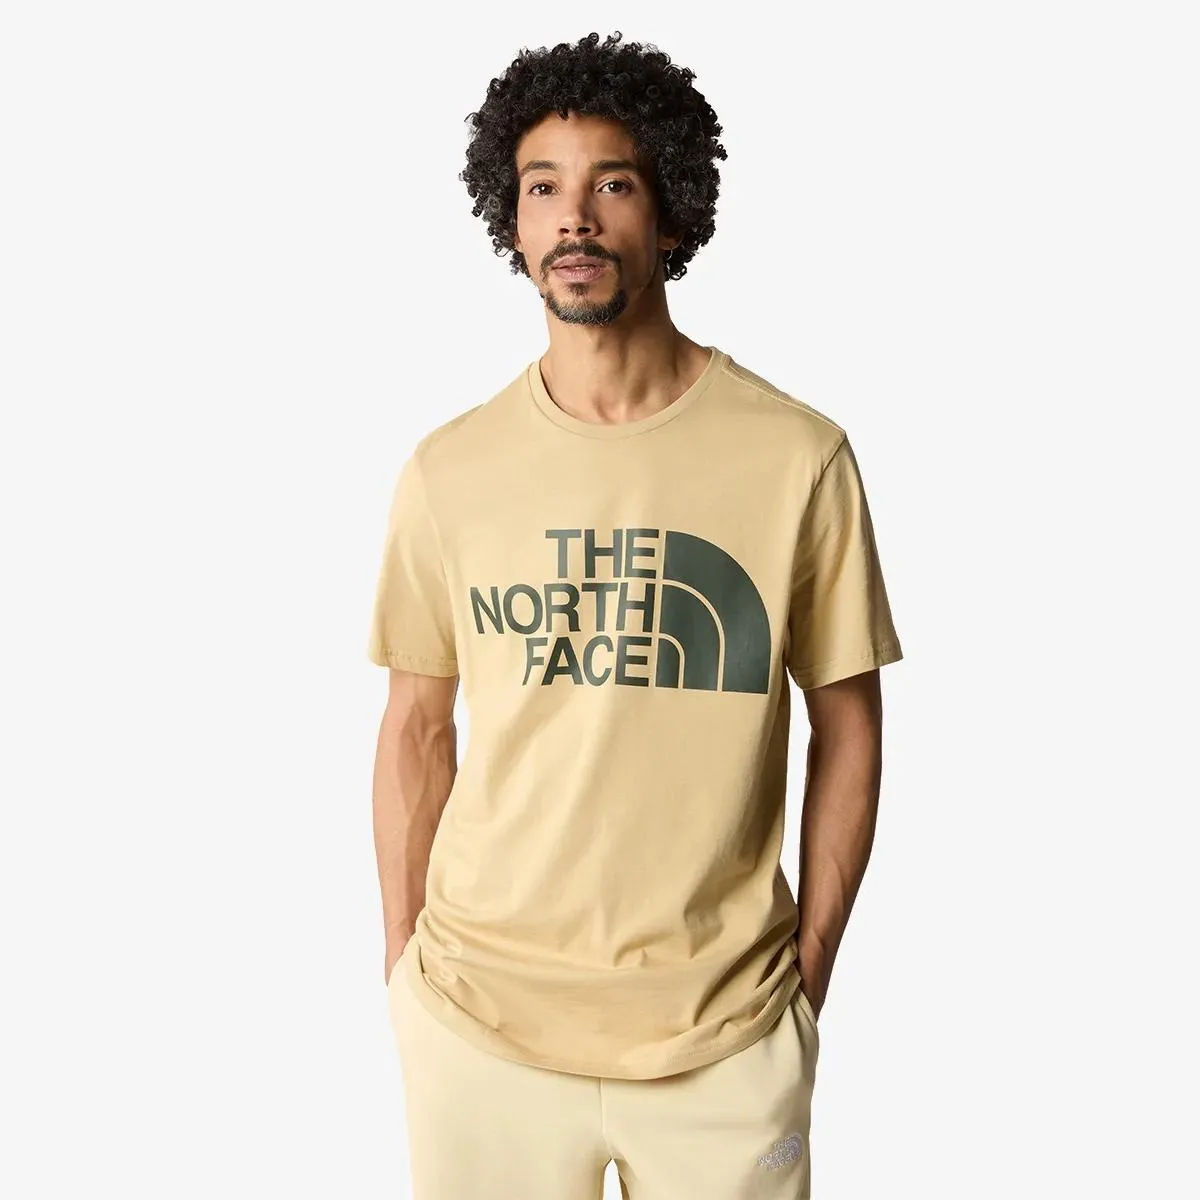 The North Face T-shirt Men’s Standard Ss Tee - Eu 